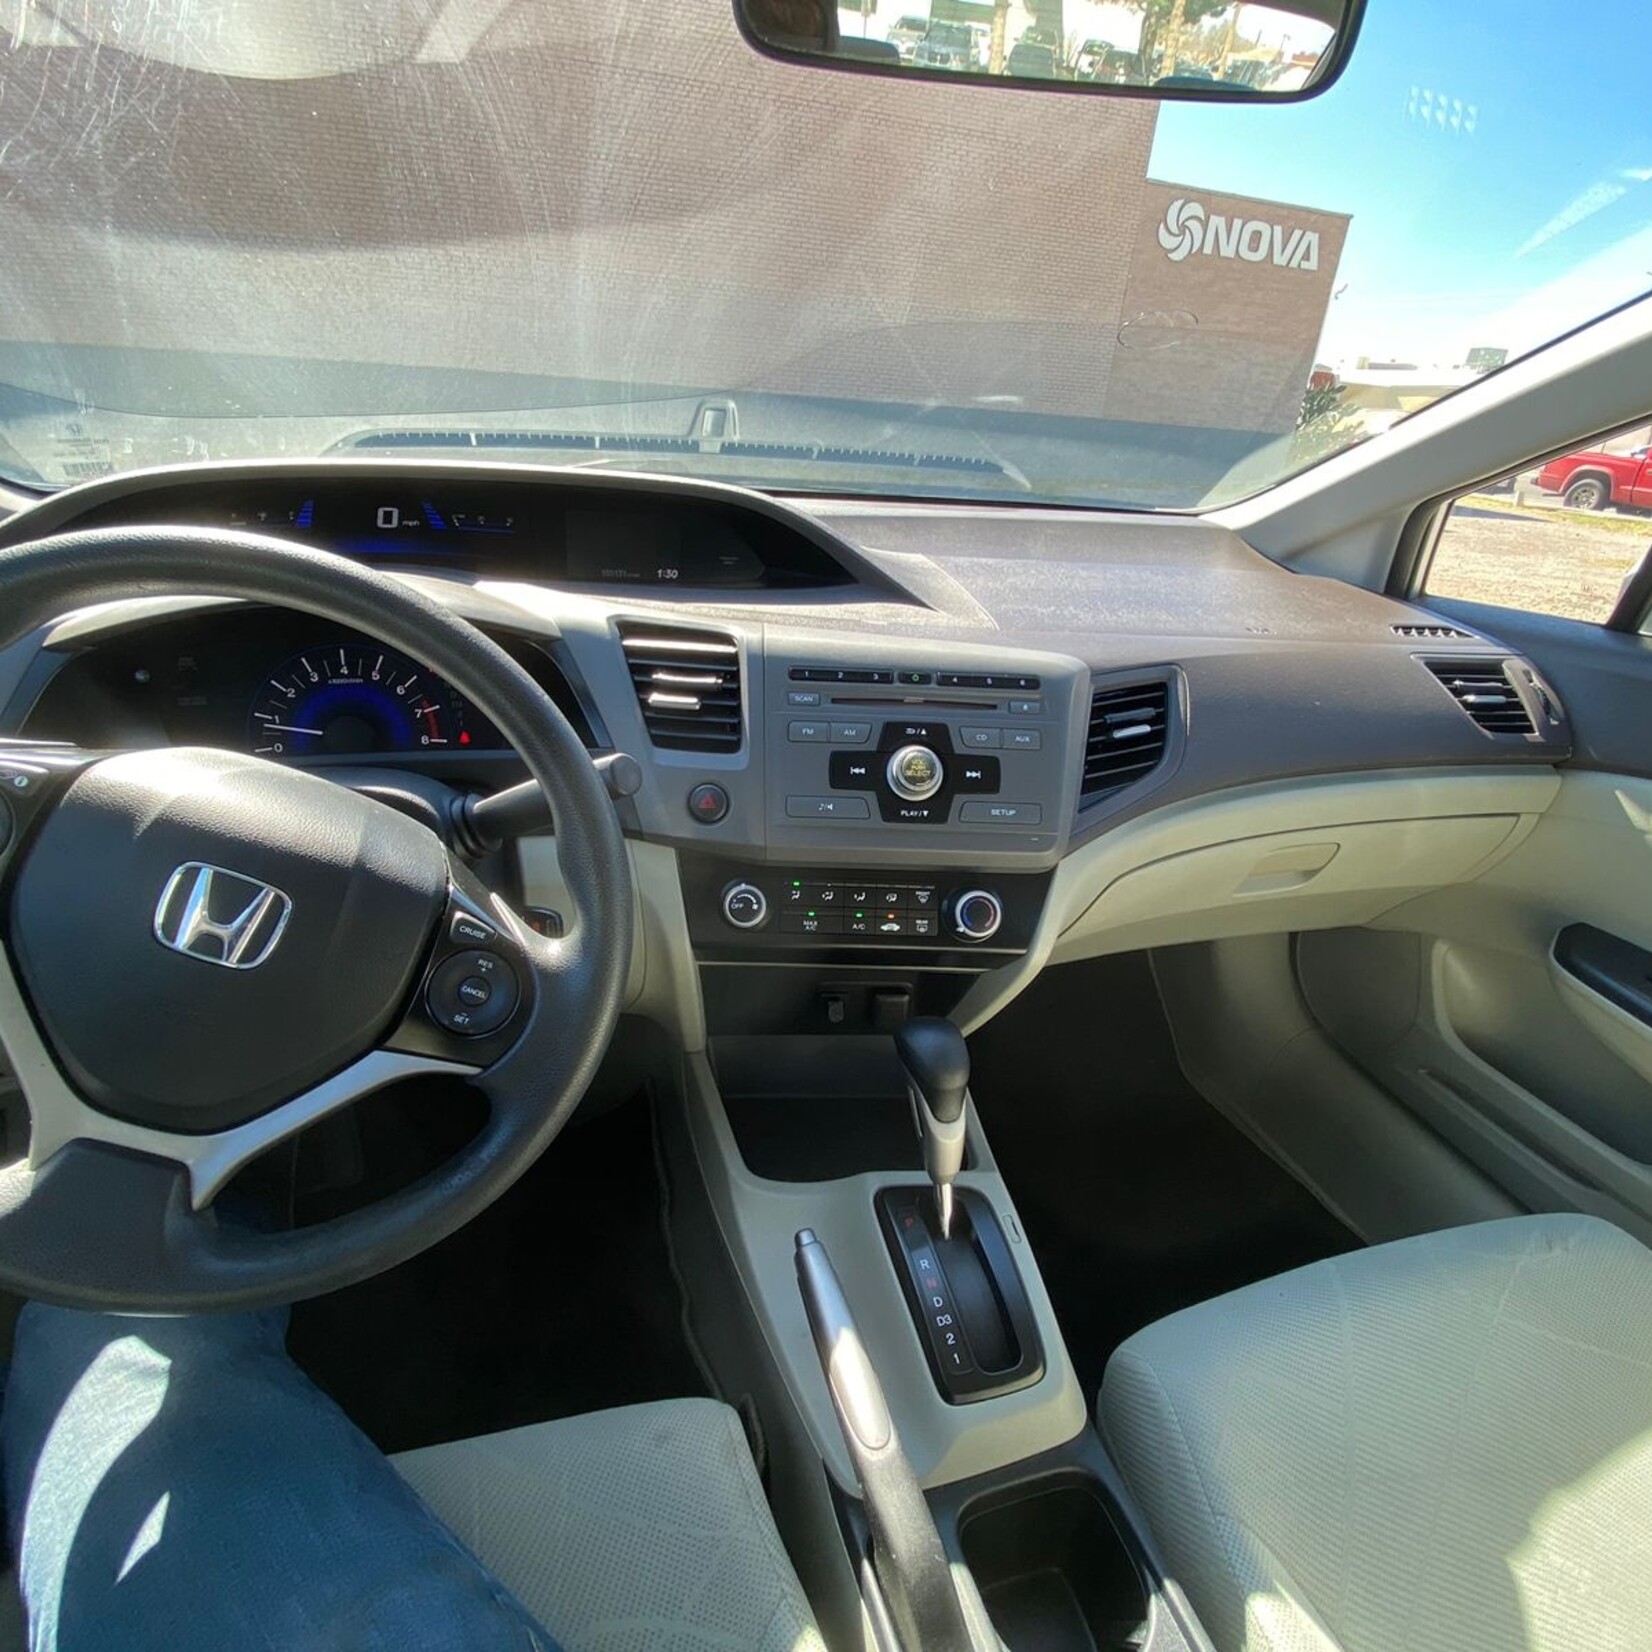 2012 Honda Civic LX Sedan Car for Sale